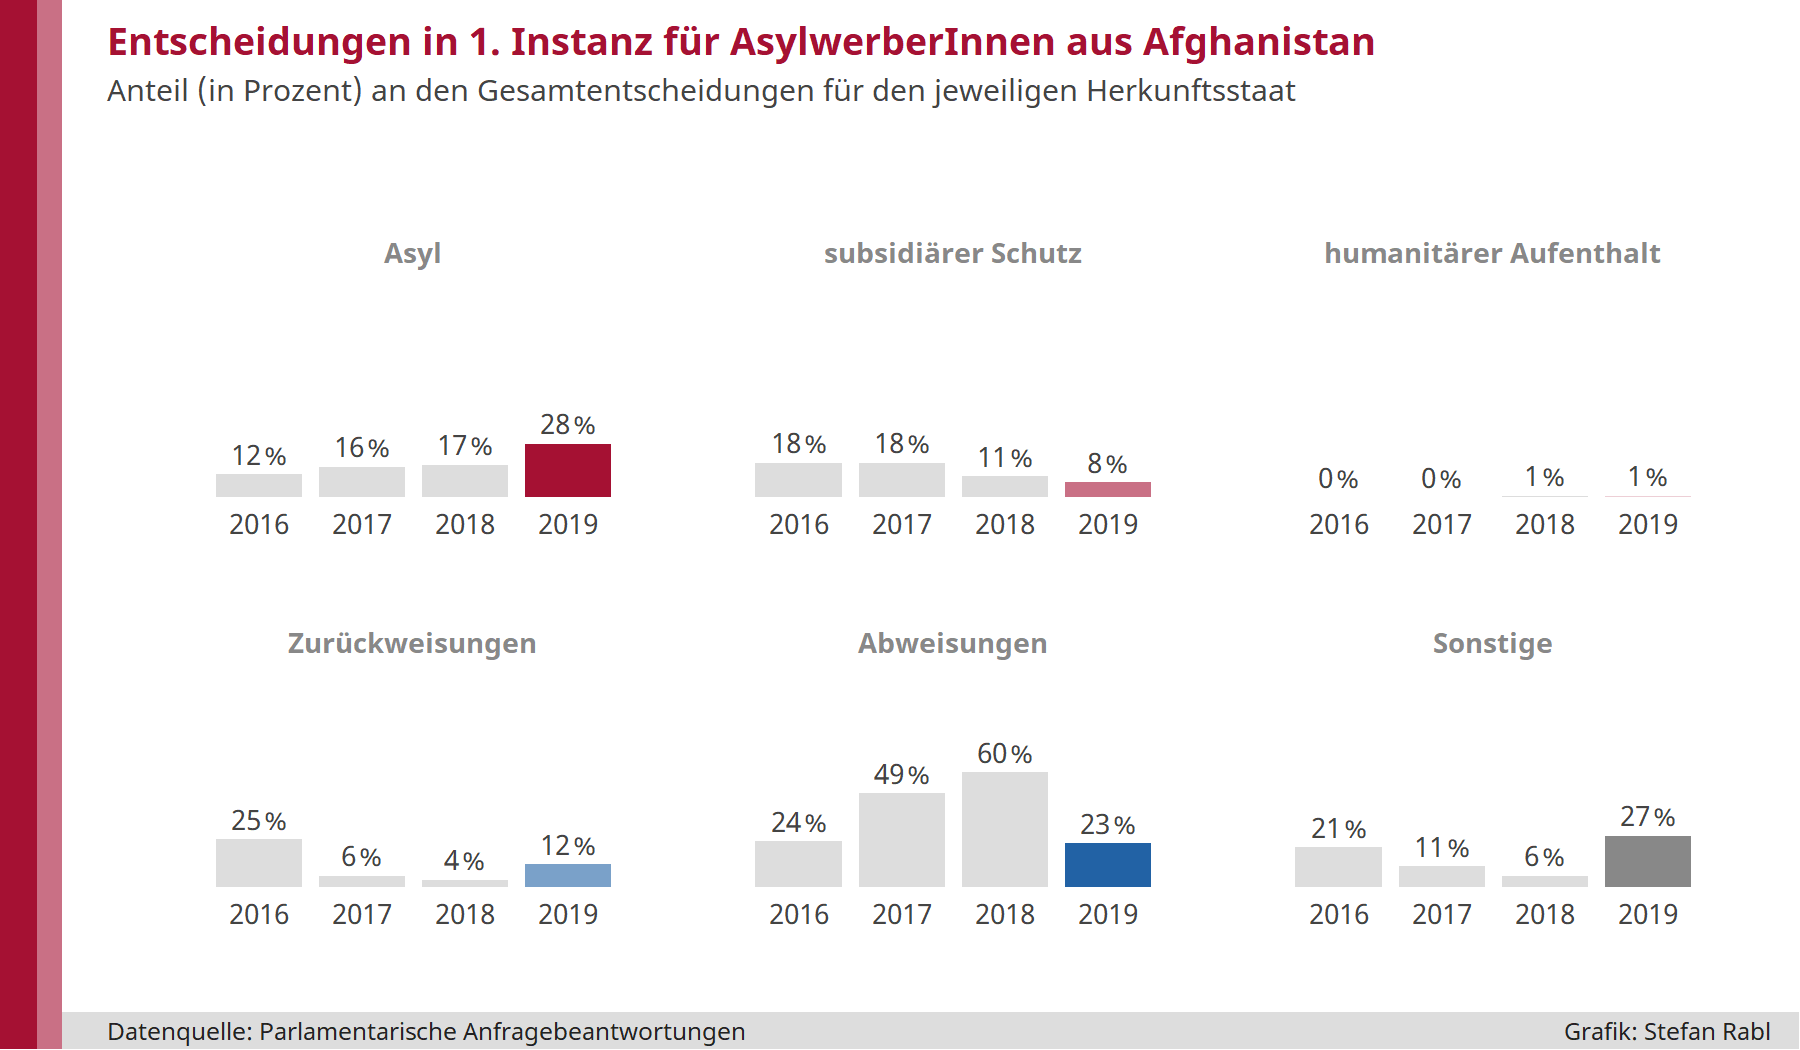 Grafik: Anteil Asylgewährungen, subsidiärer Schutz, humanitärer Aufenthalt, Zurückweisungen, Abweisungen, sonstige Entscheidungen in erster Instanz für Herkunftsstaat: Afghanistan